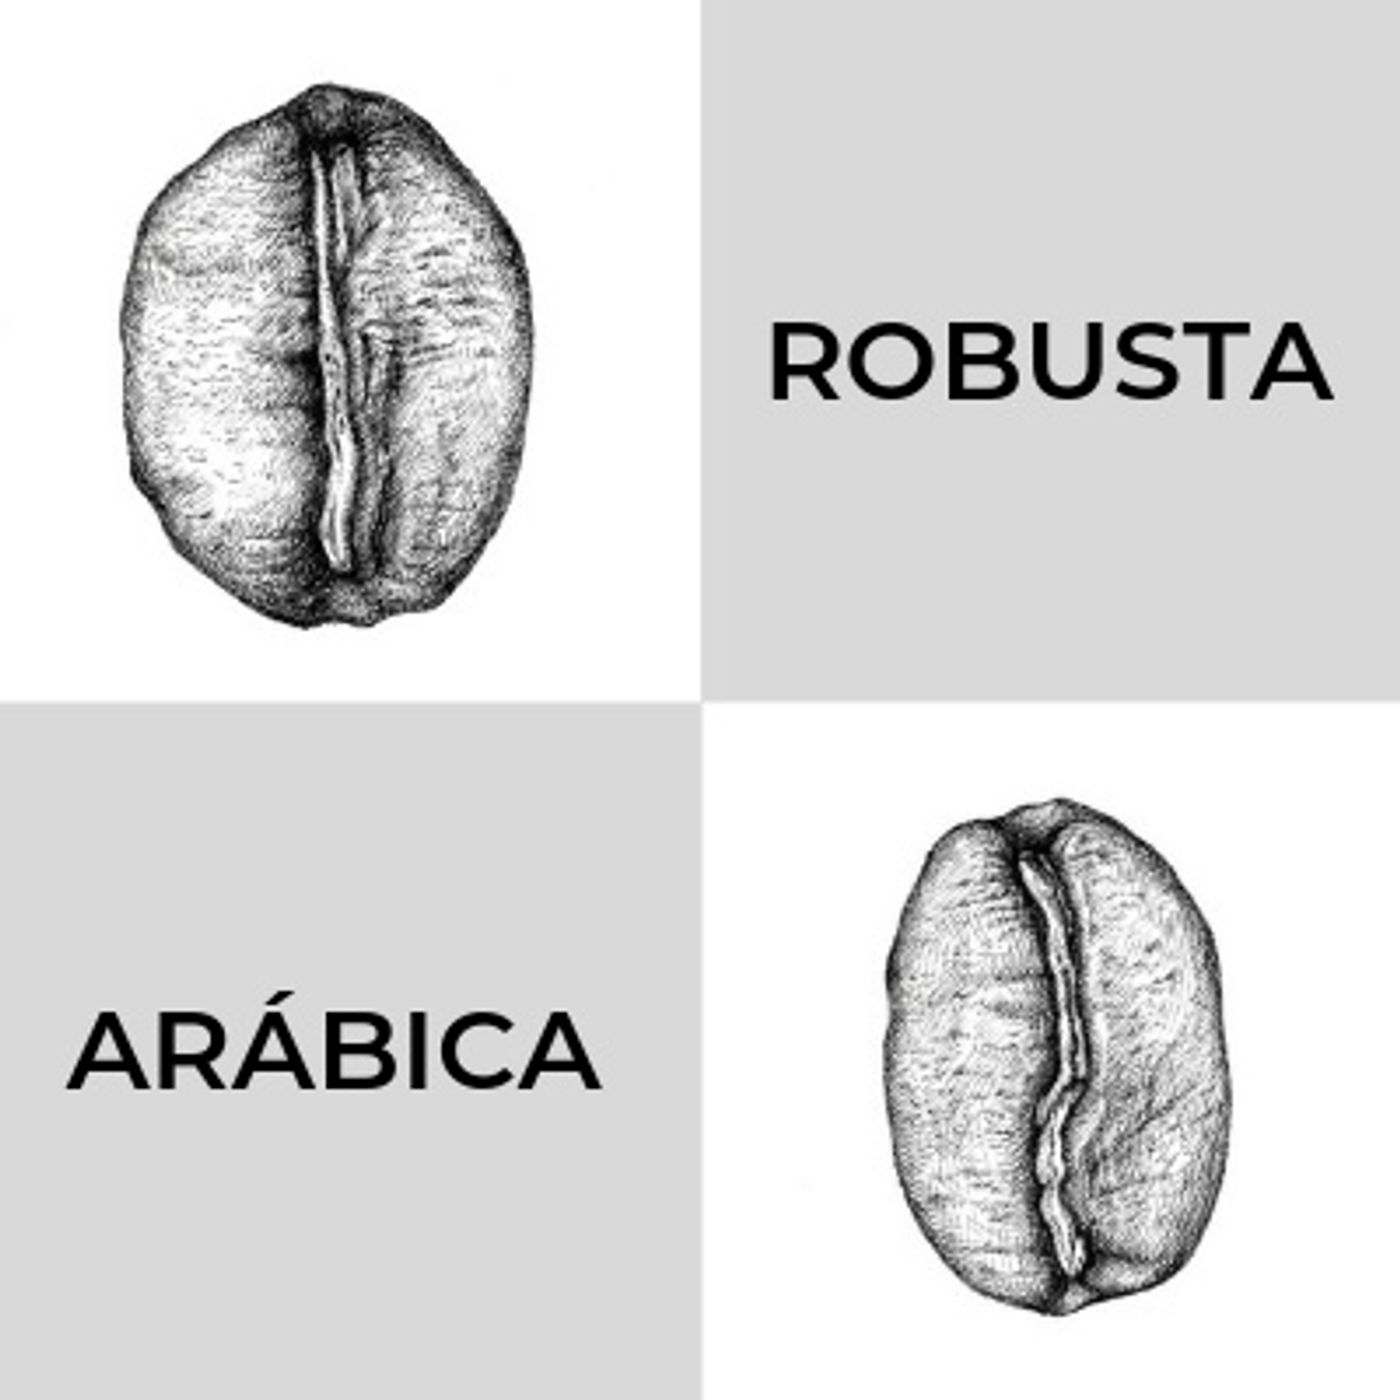 Café Arábica o Robusta ¿cuál deberías preferir?